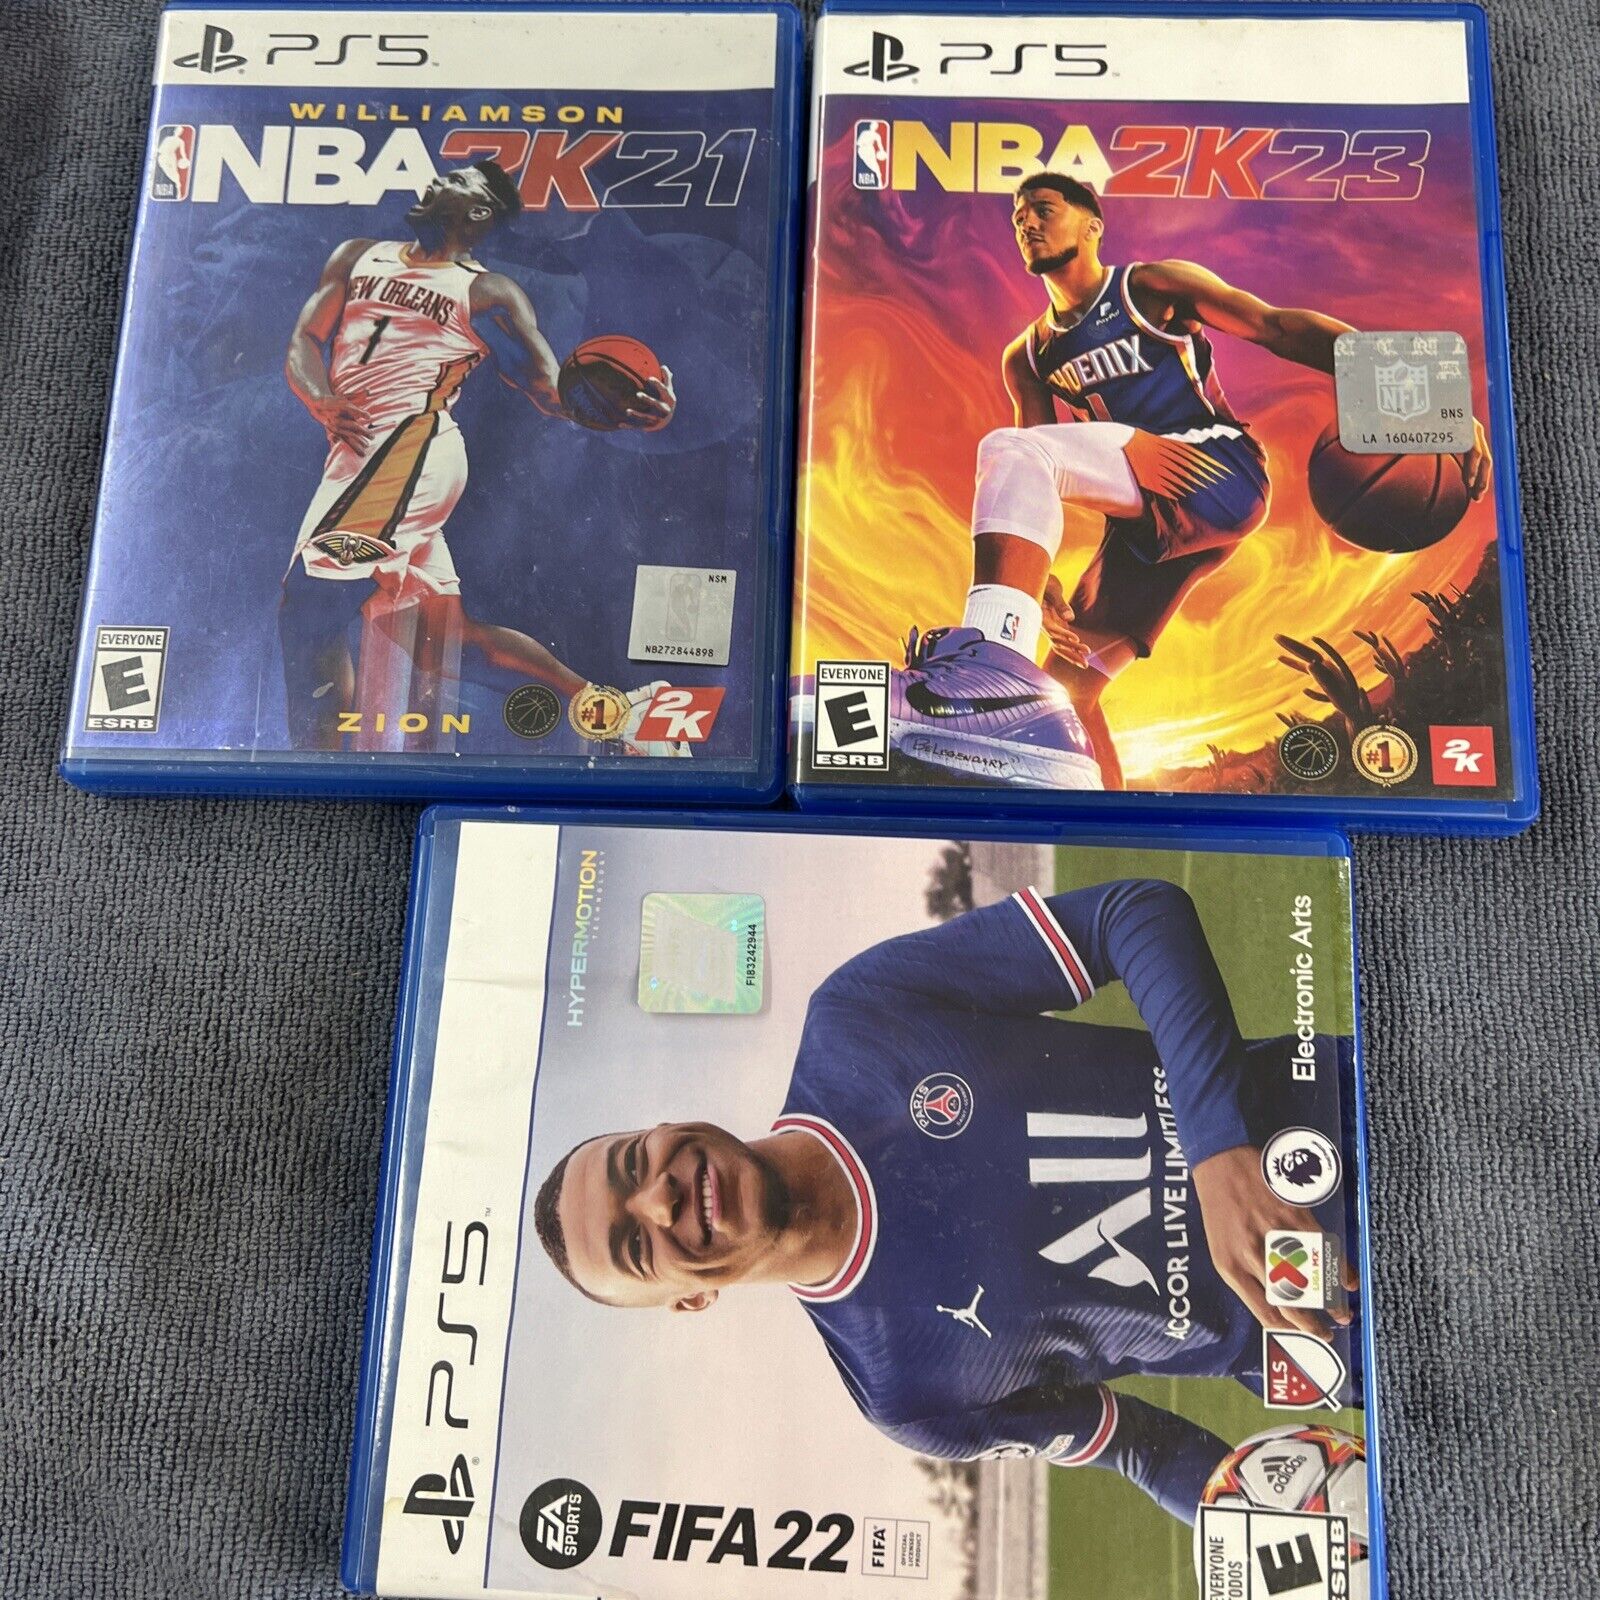 FIFA 22 + NBA 2k21 + NBA 2k23 Bundle - Sony PlayStation 5 Disc Is Good